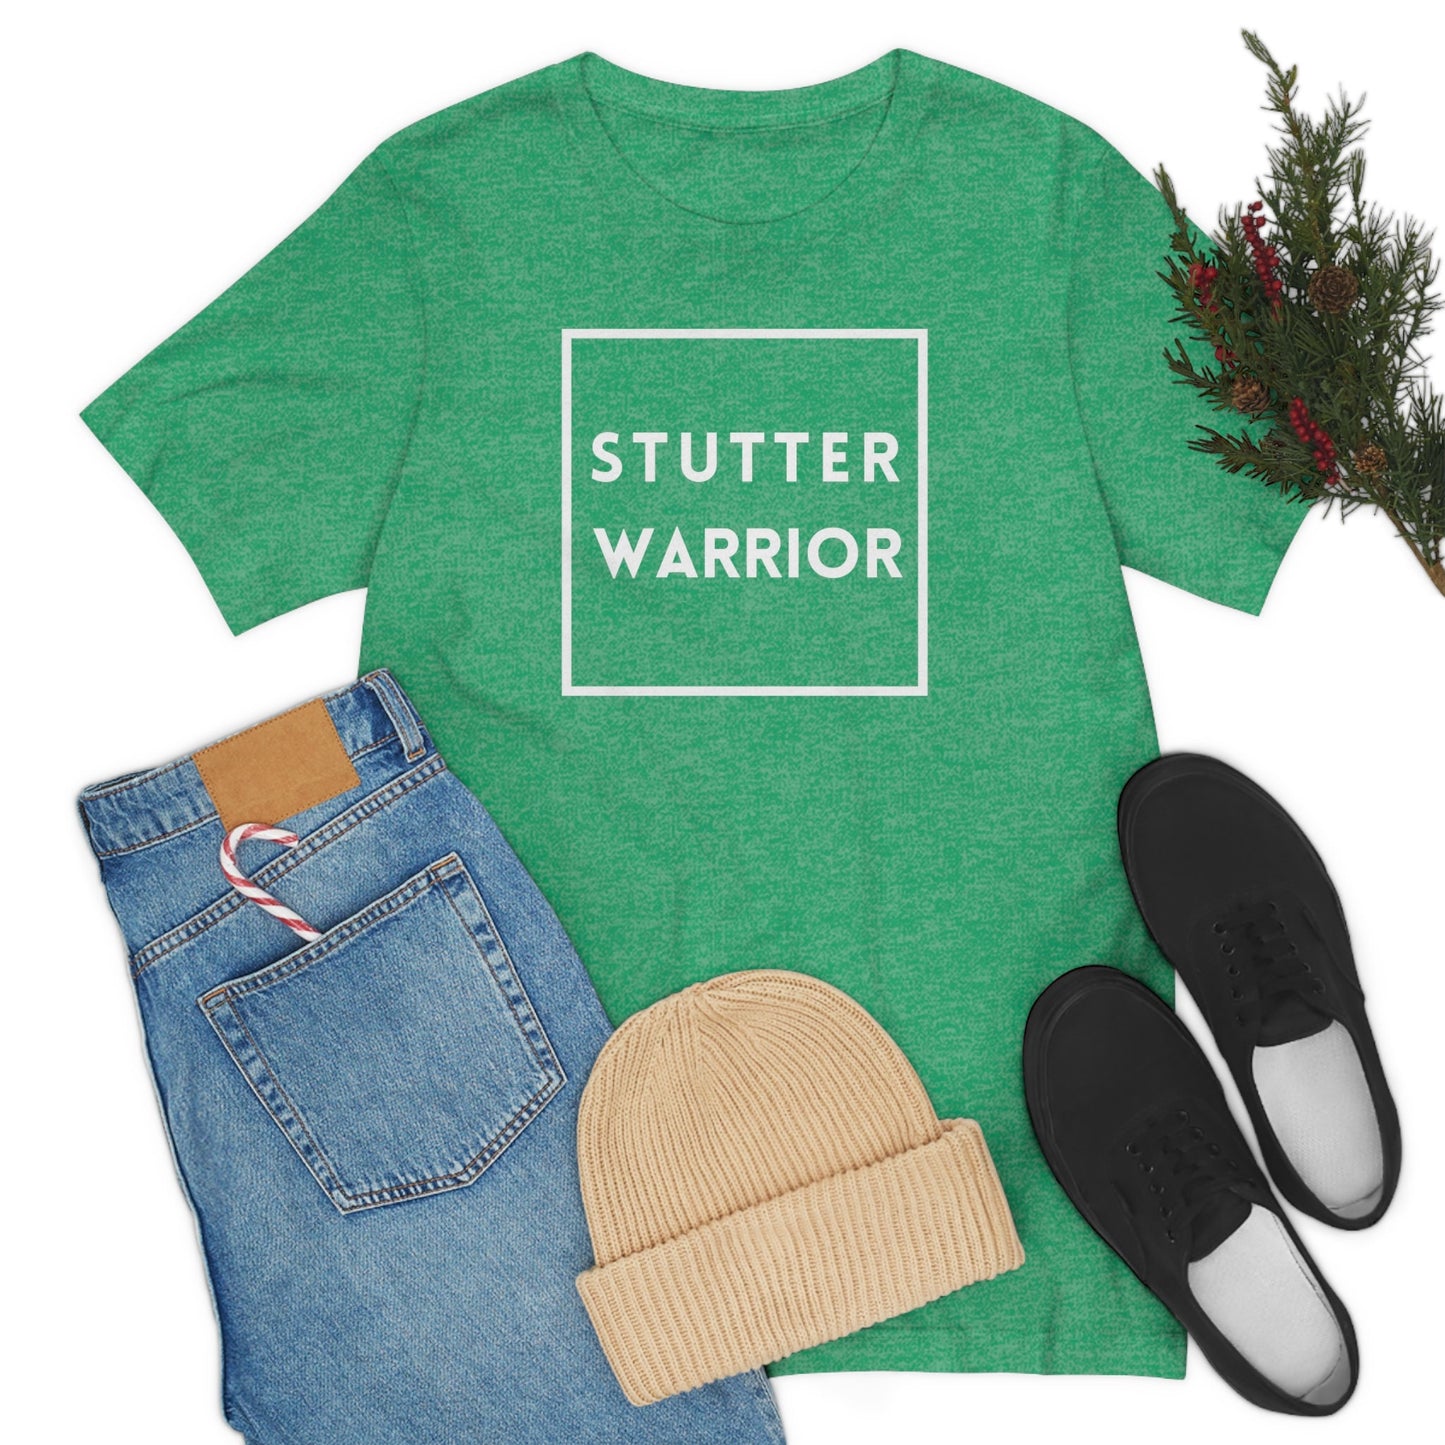 Stutter Warrior Unisex T-shirt